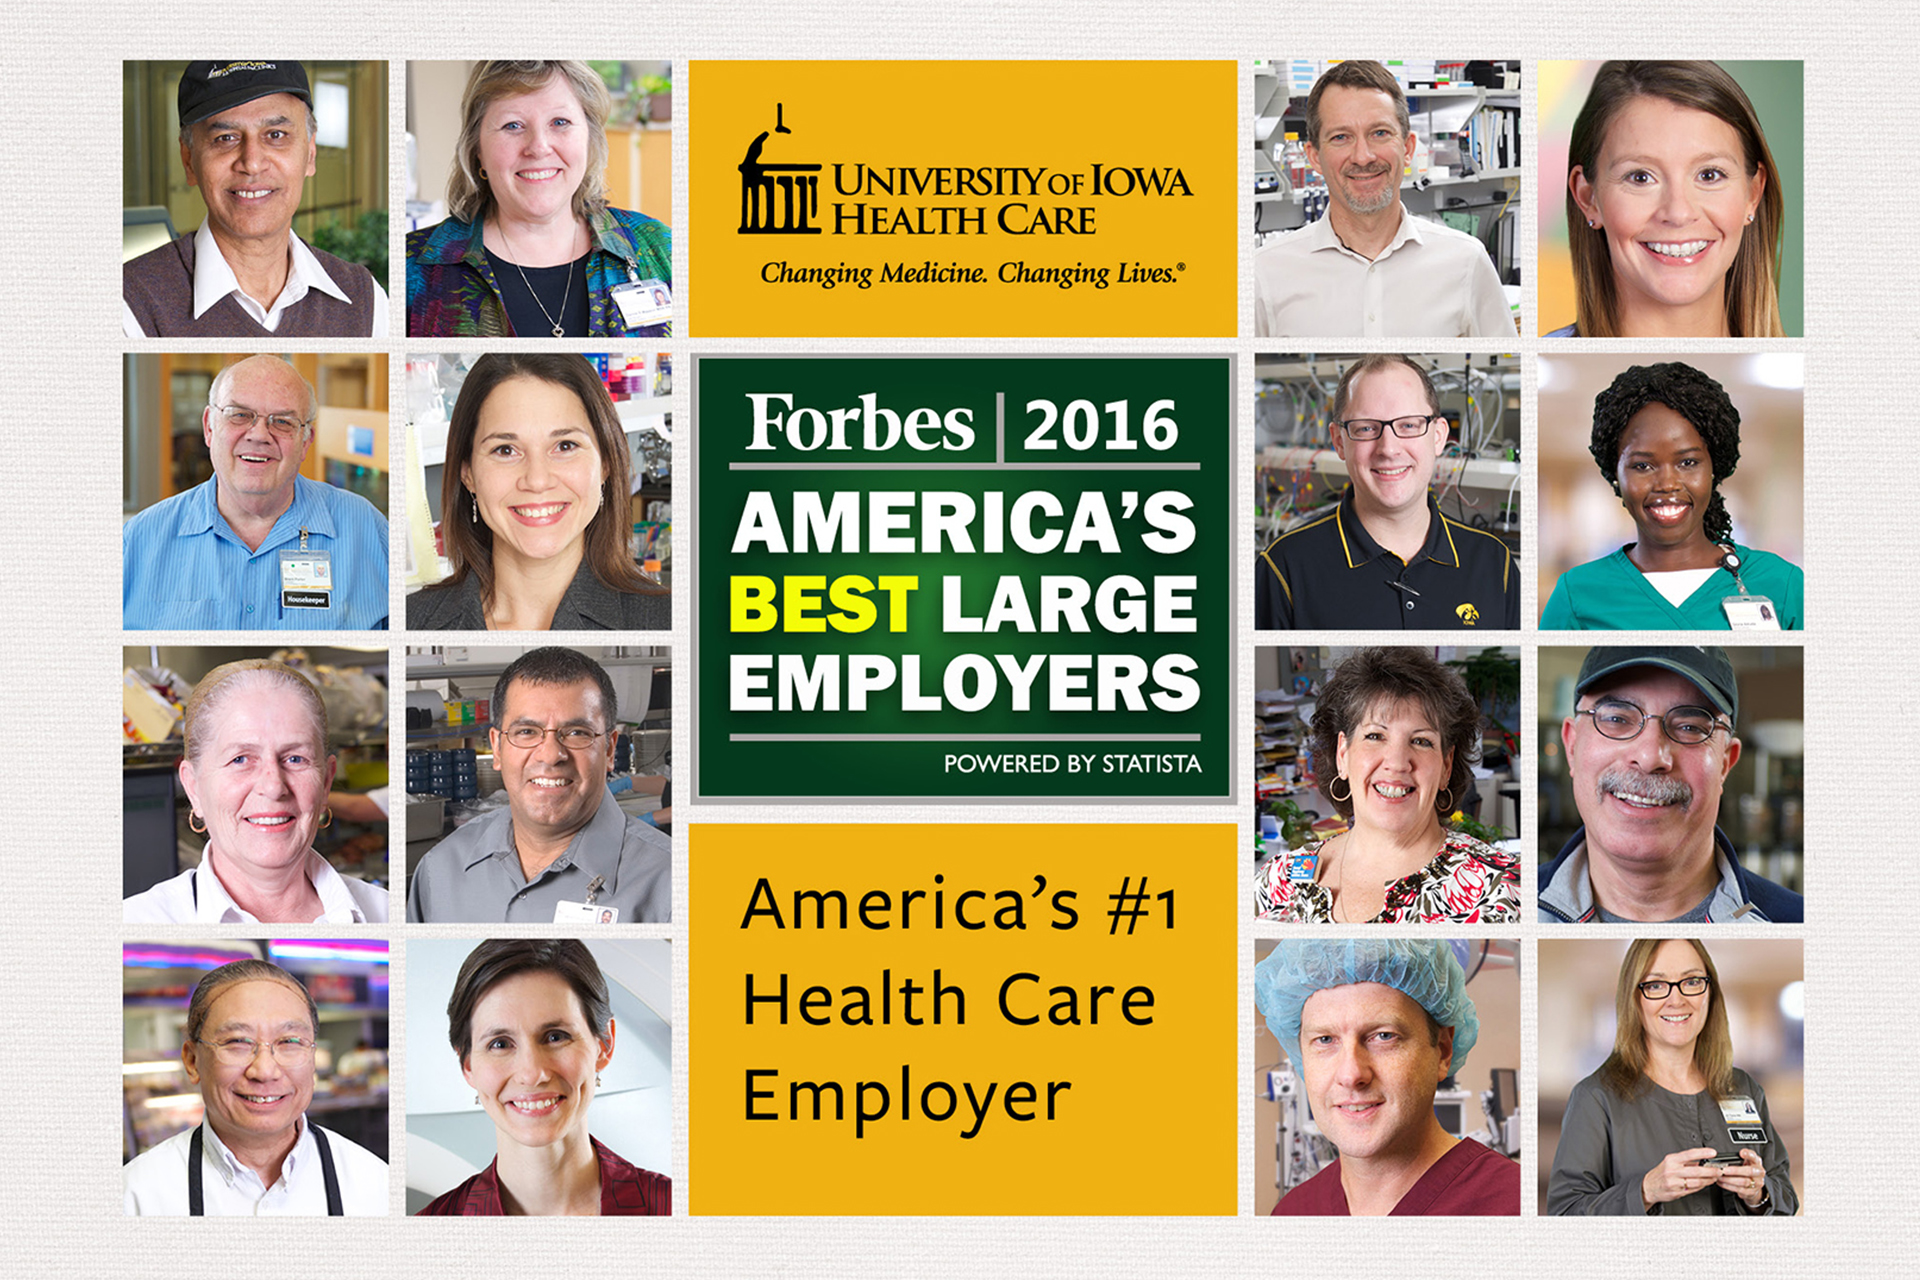 America's #1 Health Care Employer 2016